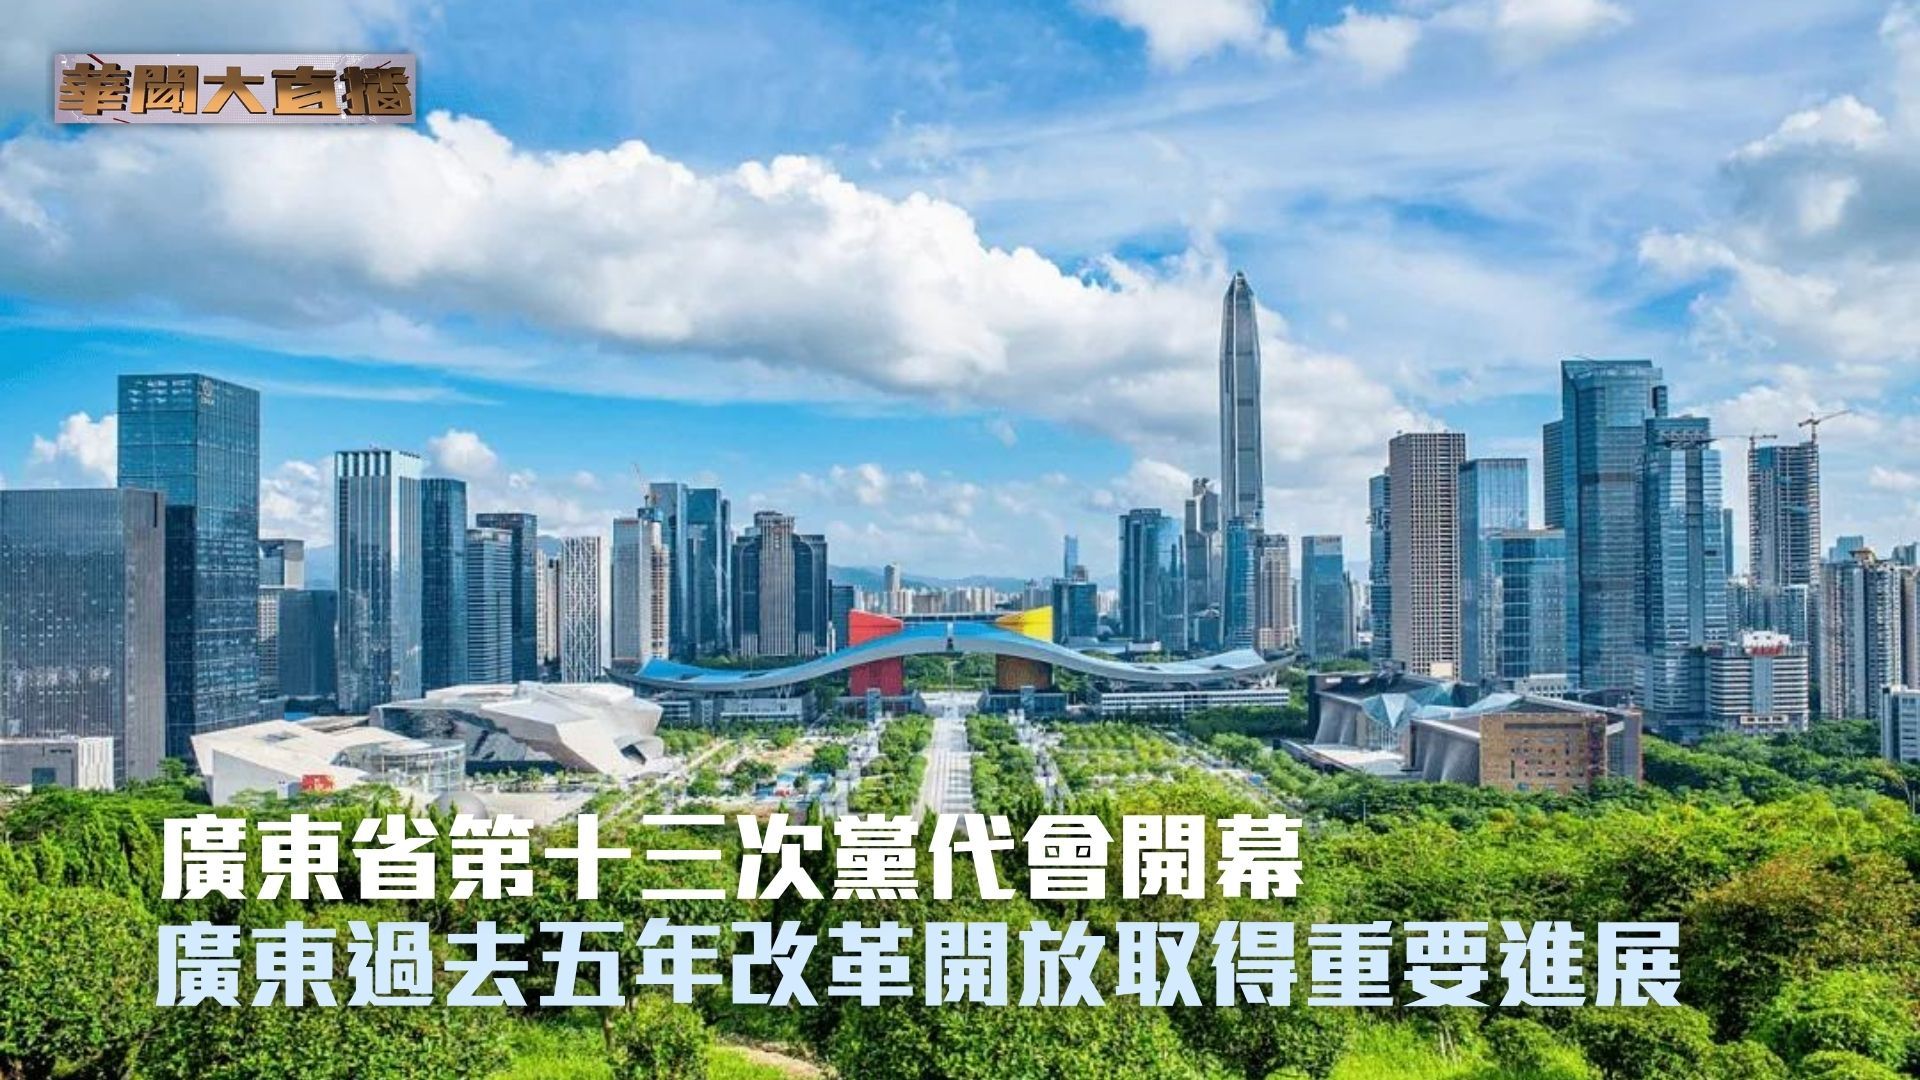 广东过去五年改革开放取得重要进展